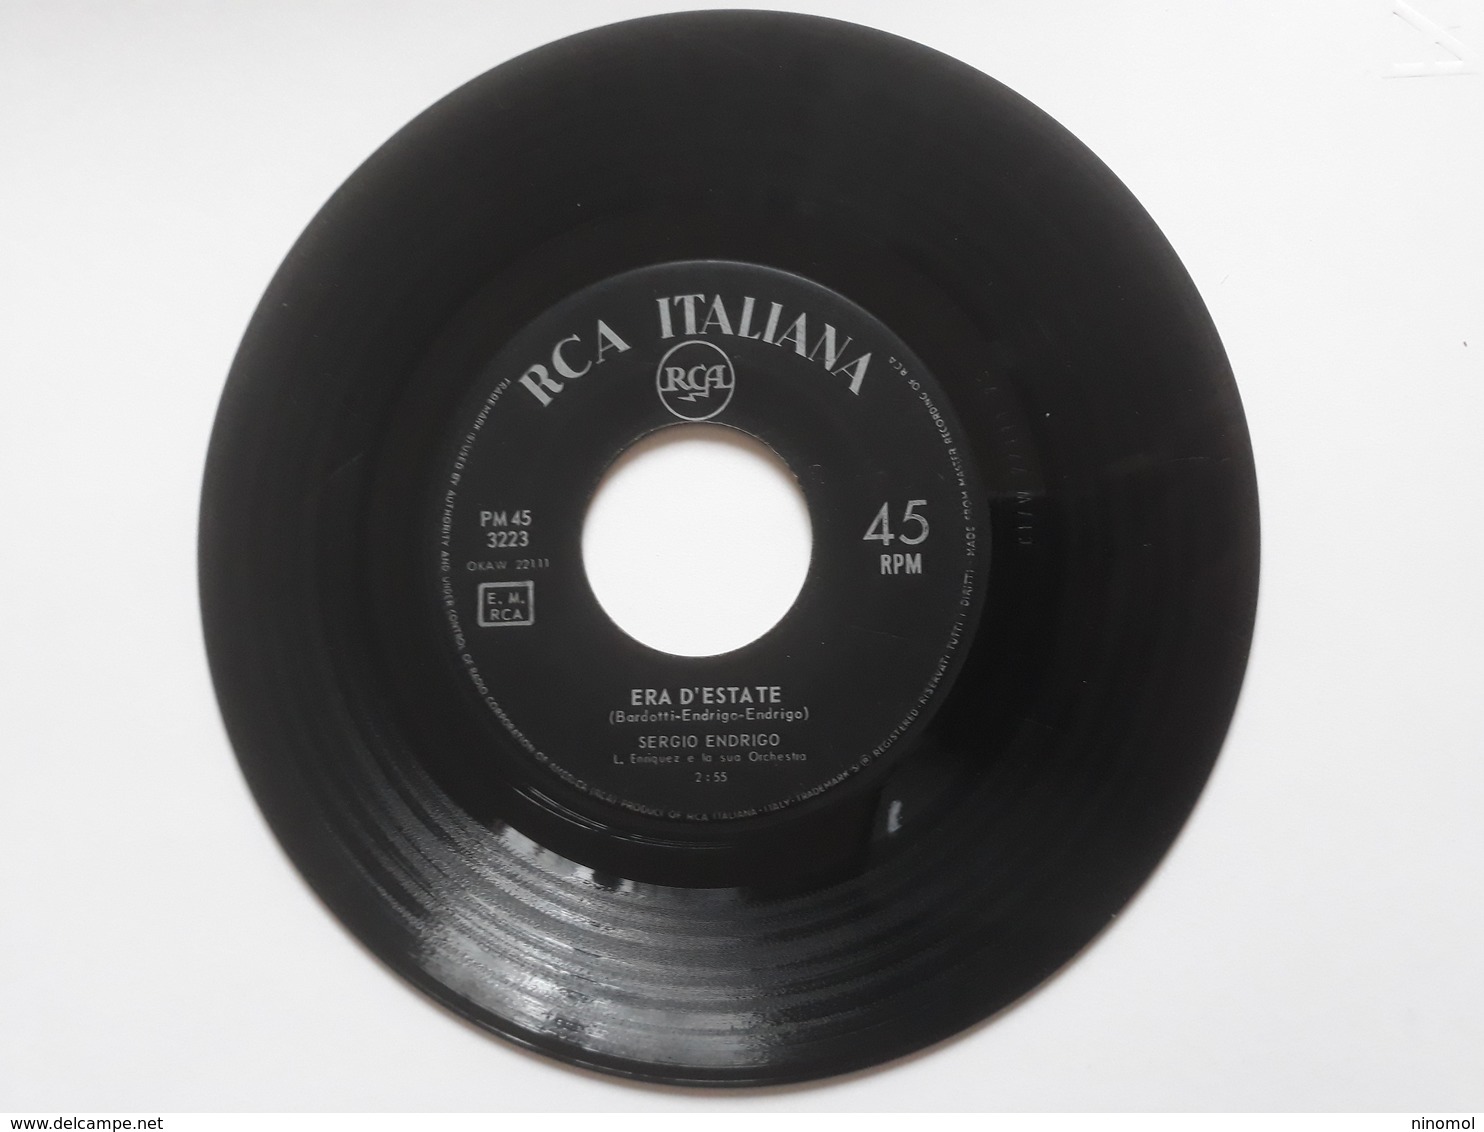 Sergio Endrigo  -  Era D' Estate   RCA Italiana PM 45;   Anno 1963. - Soul - R&B